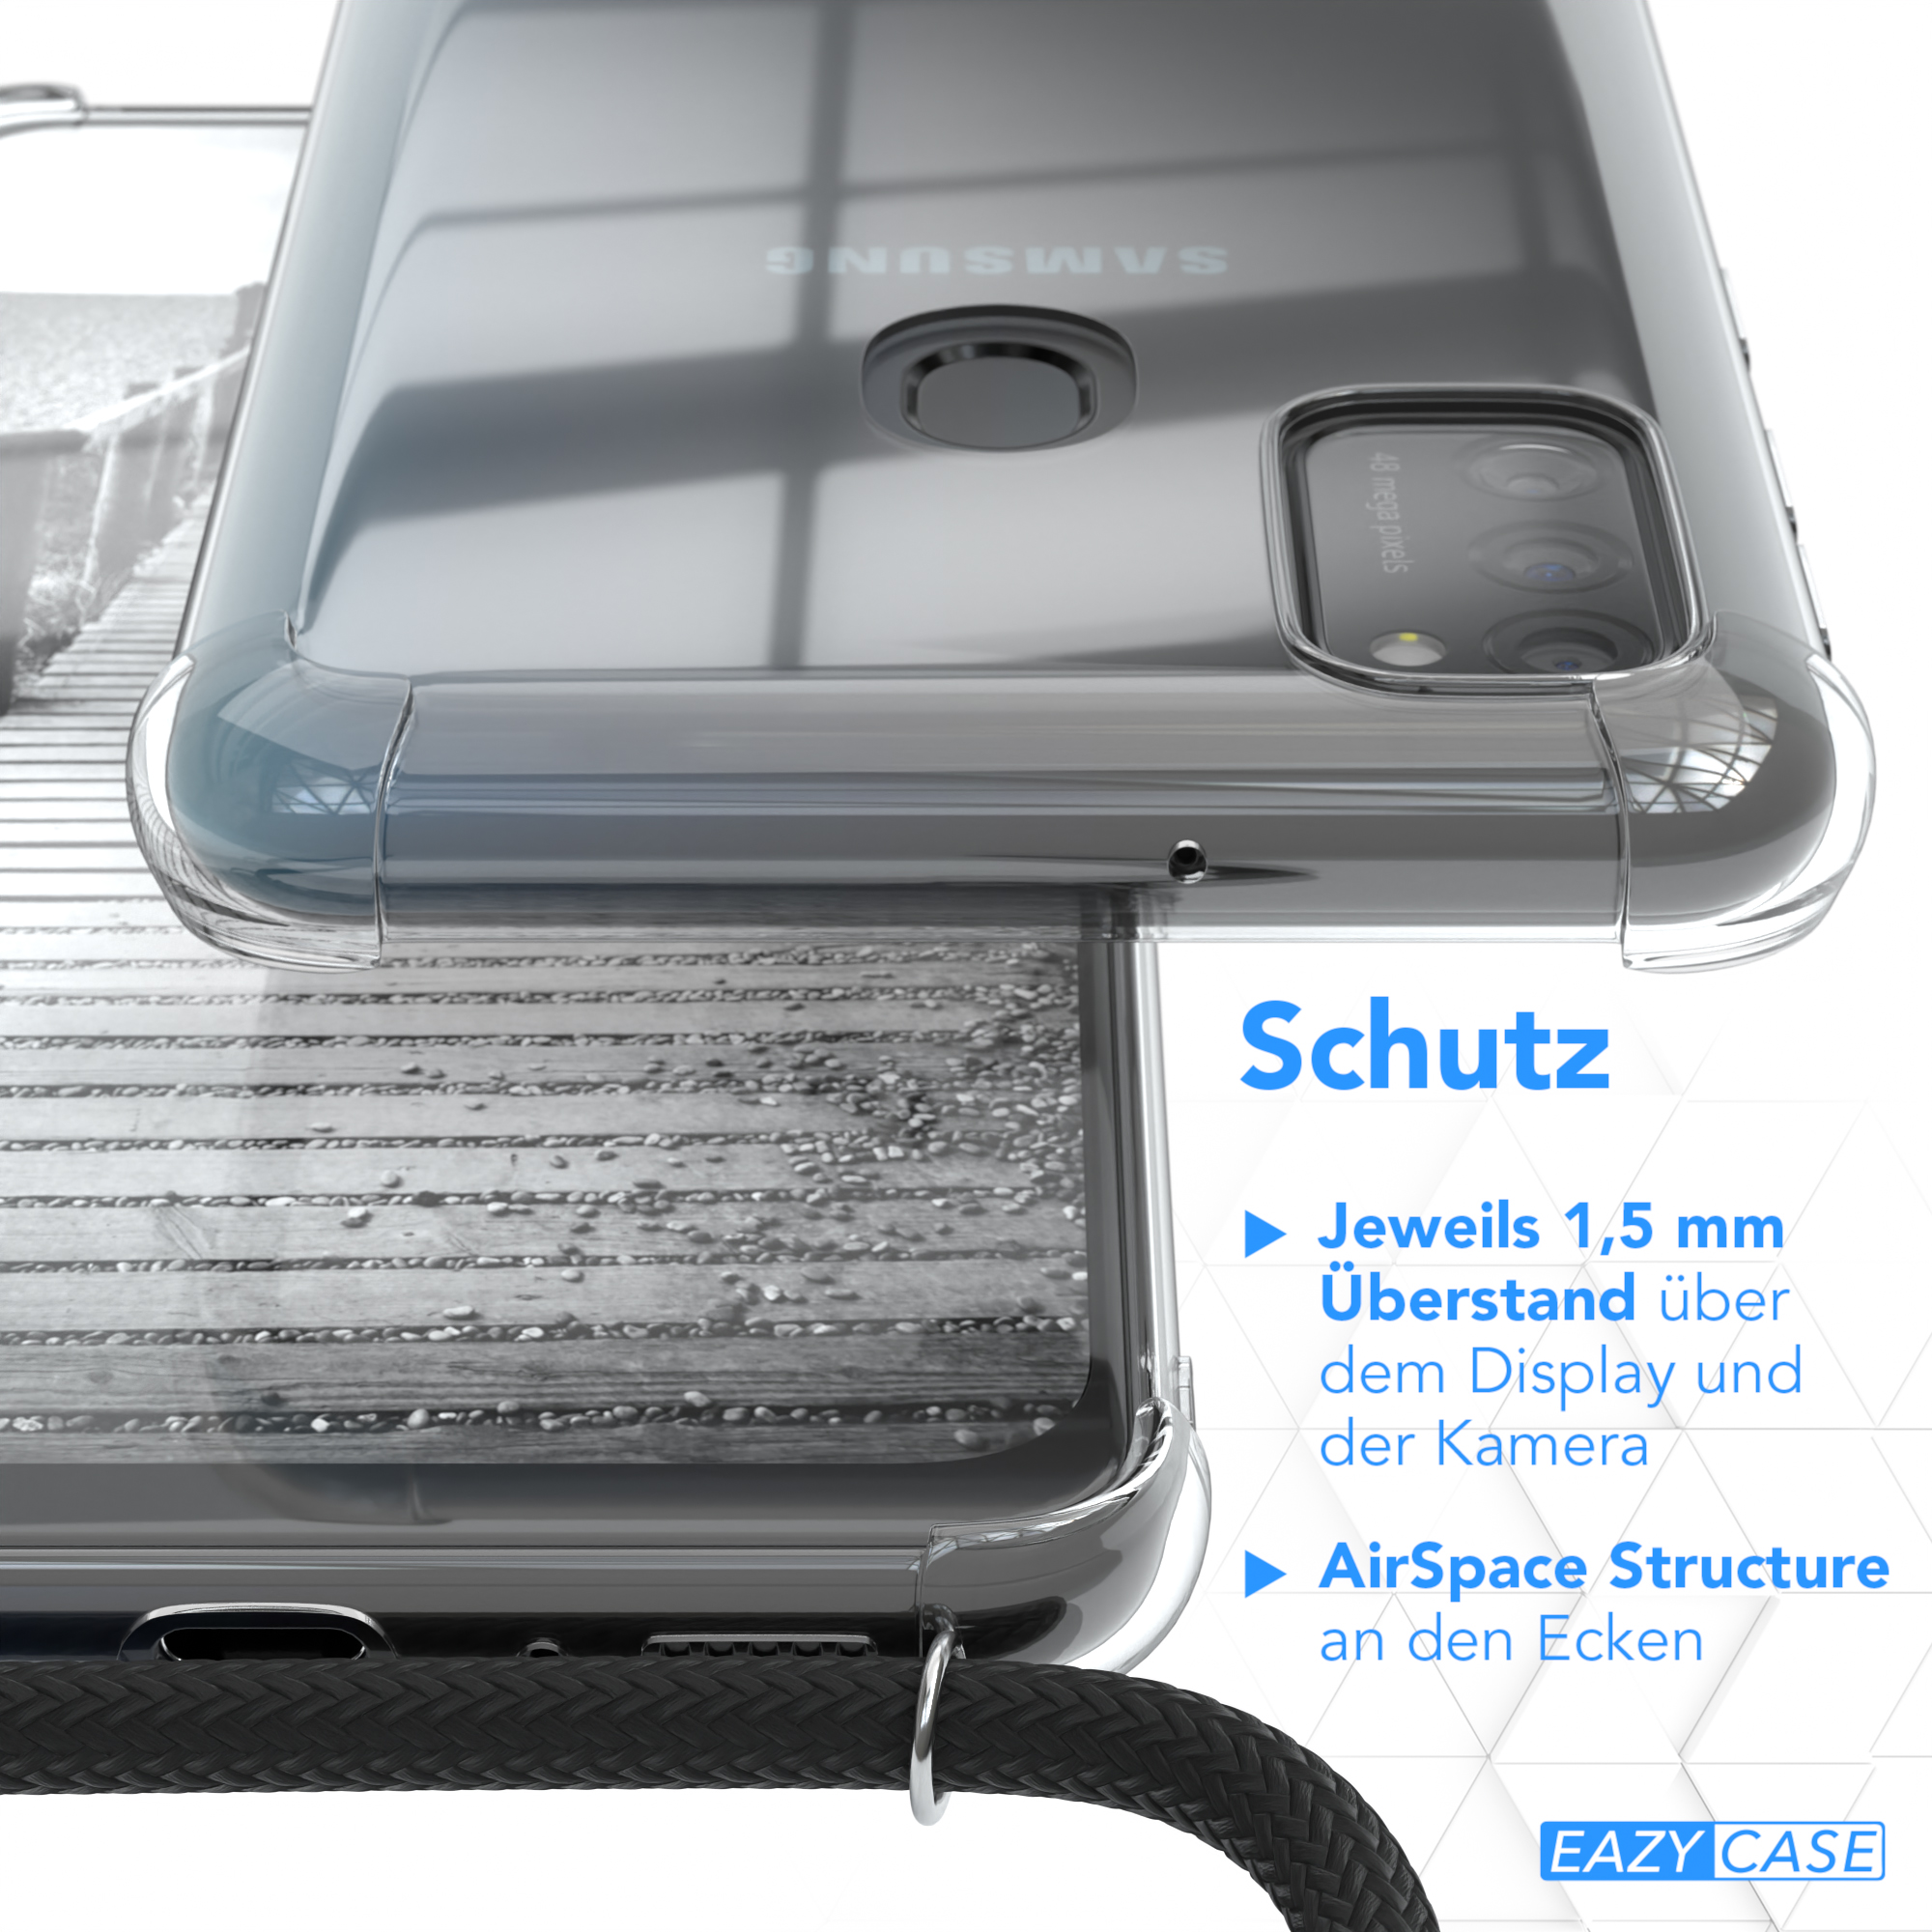 EAZY CASE Umhängetasche, Schwarz, Metall Galaxy M30s Samsung, + Kordel / extra M21, Silber Handykette